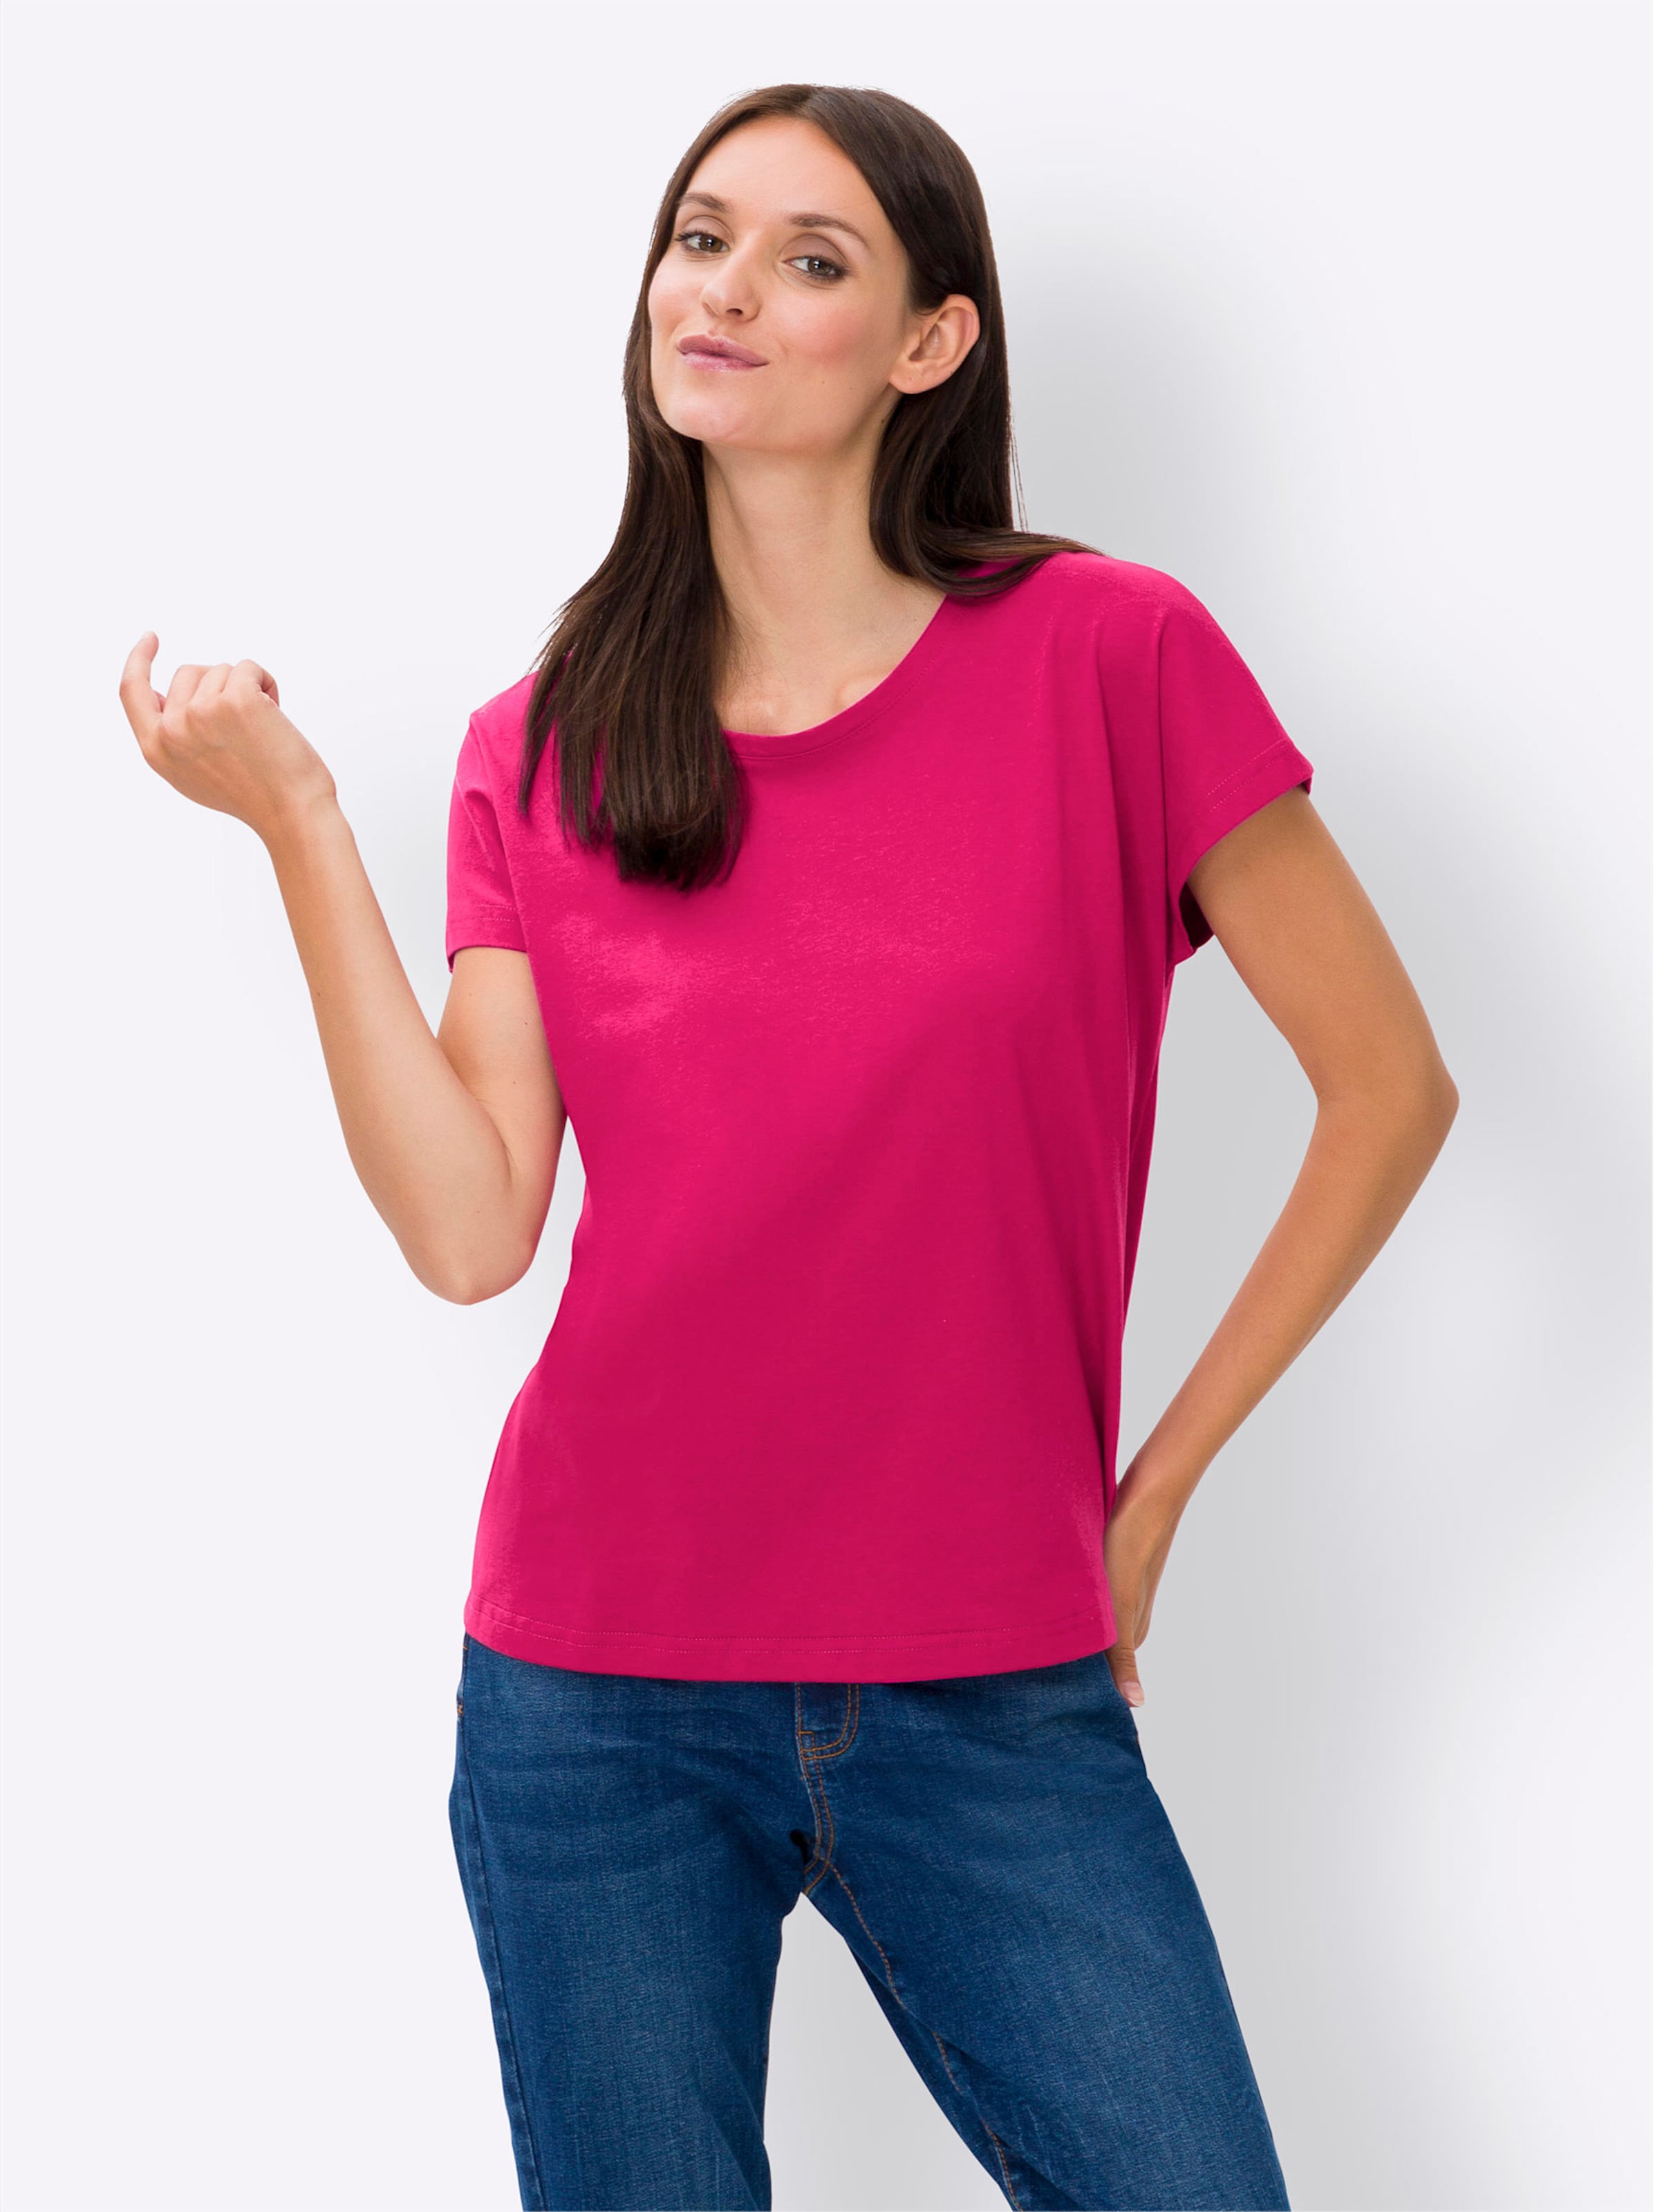 Best for günstig Kaufen-Shirt in pink von heine. Shirt in pink von heine <![CDATA[Shirt Formbeständig und trageangenehm, mit dezentem Glanz. Mit Rundhals-Ausschnitt, überschnittener Schulter, Kurzarm und abgerundetem Saum. Hinten etwas länger. Unterstützt die Initiative Cott